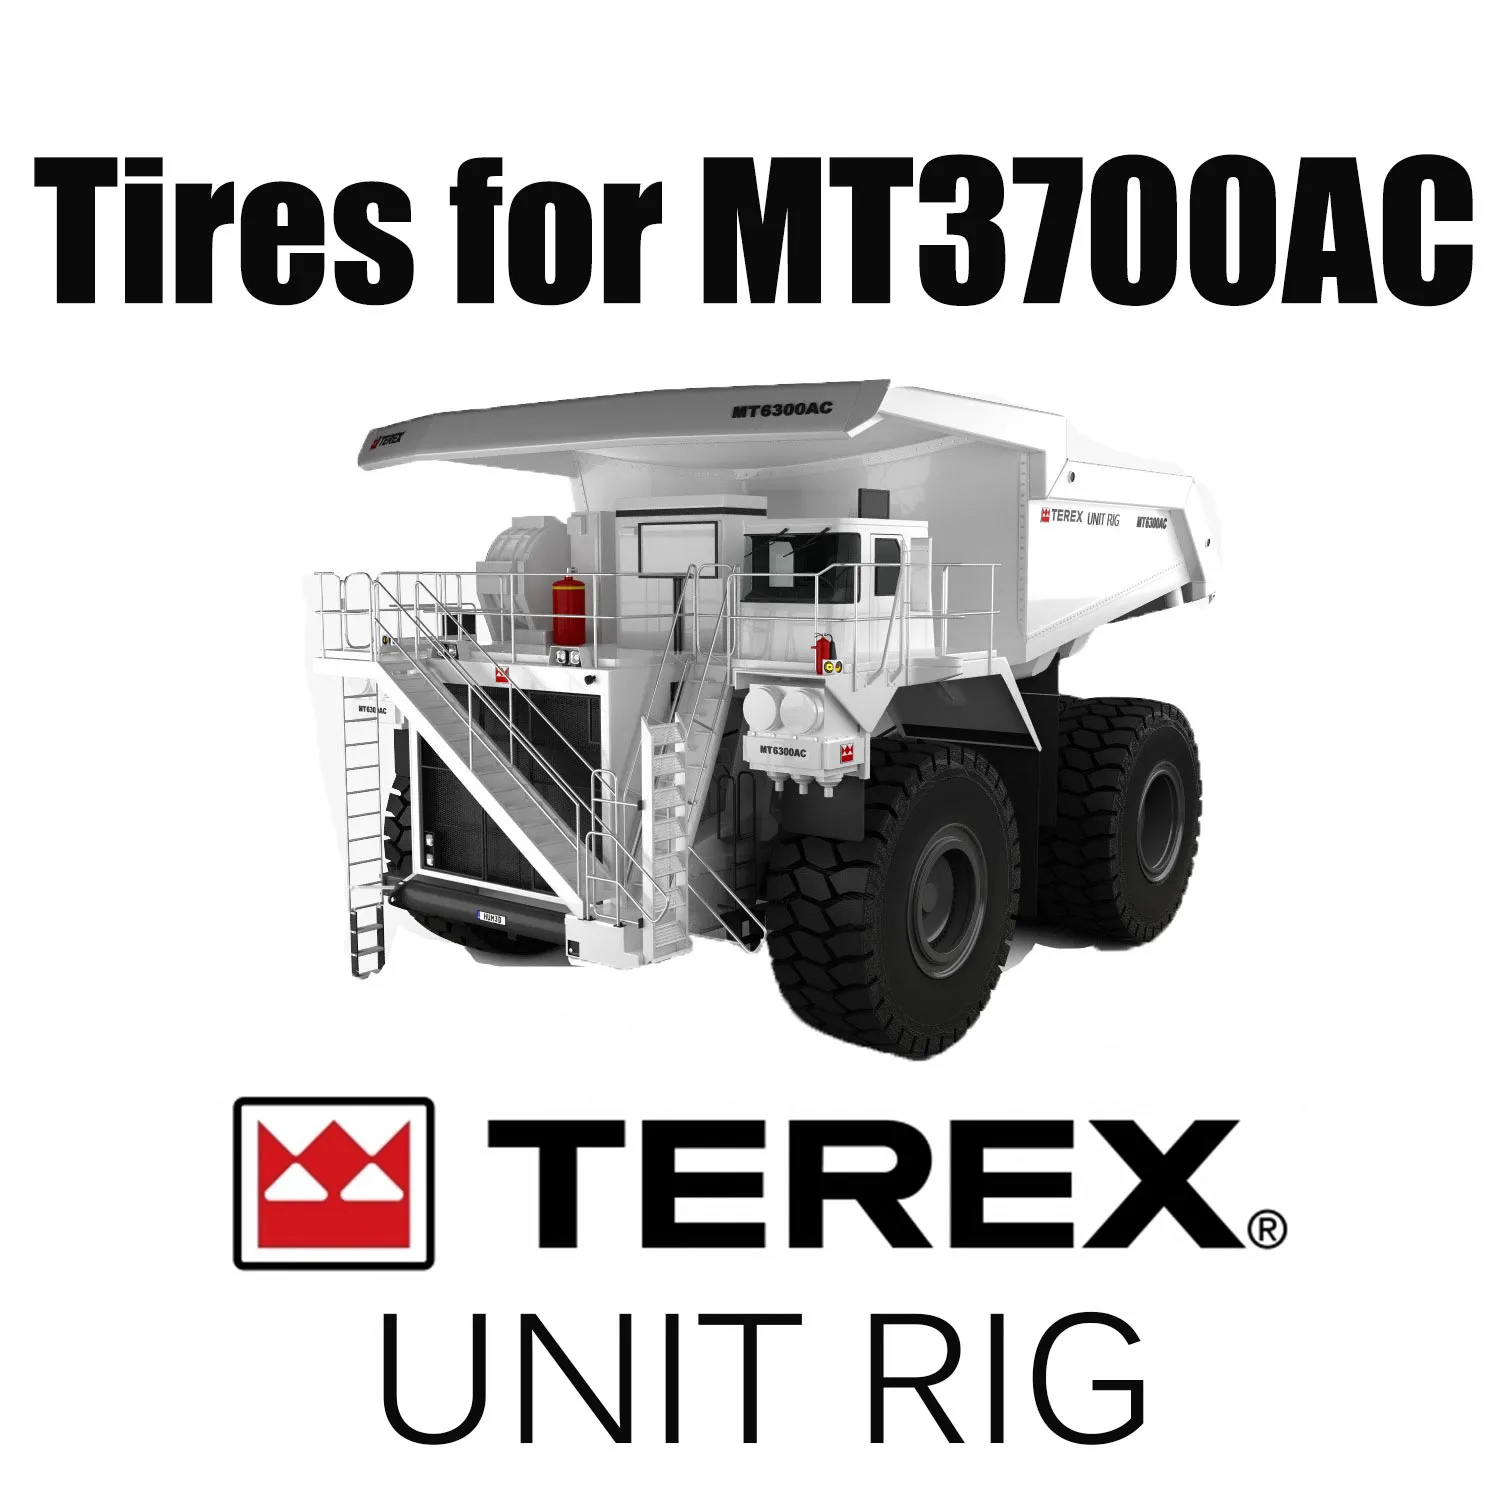 Unit Rig MT3700 AC Haul Truck uitgerust met 37.00R57 mijnbouwbanden en grondverzetbanden